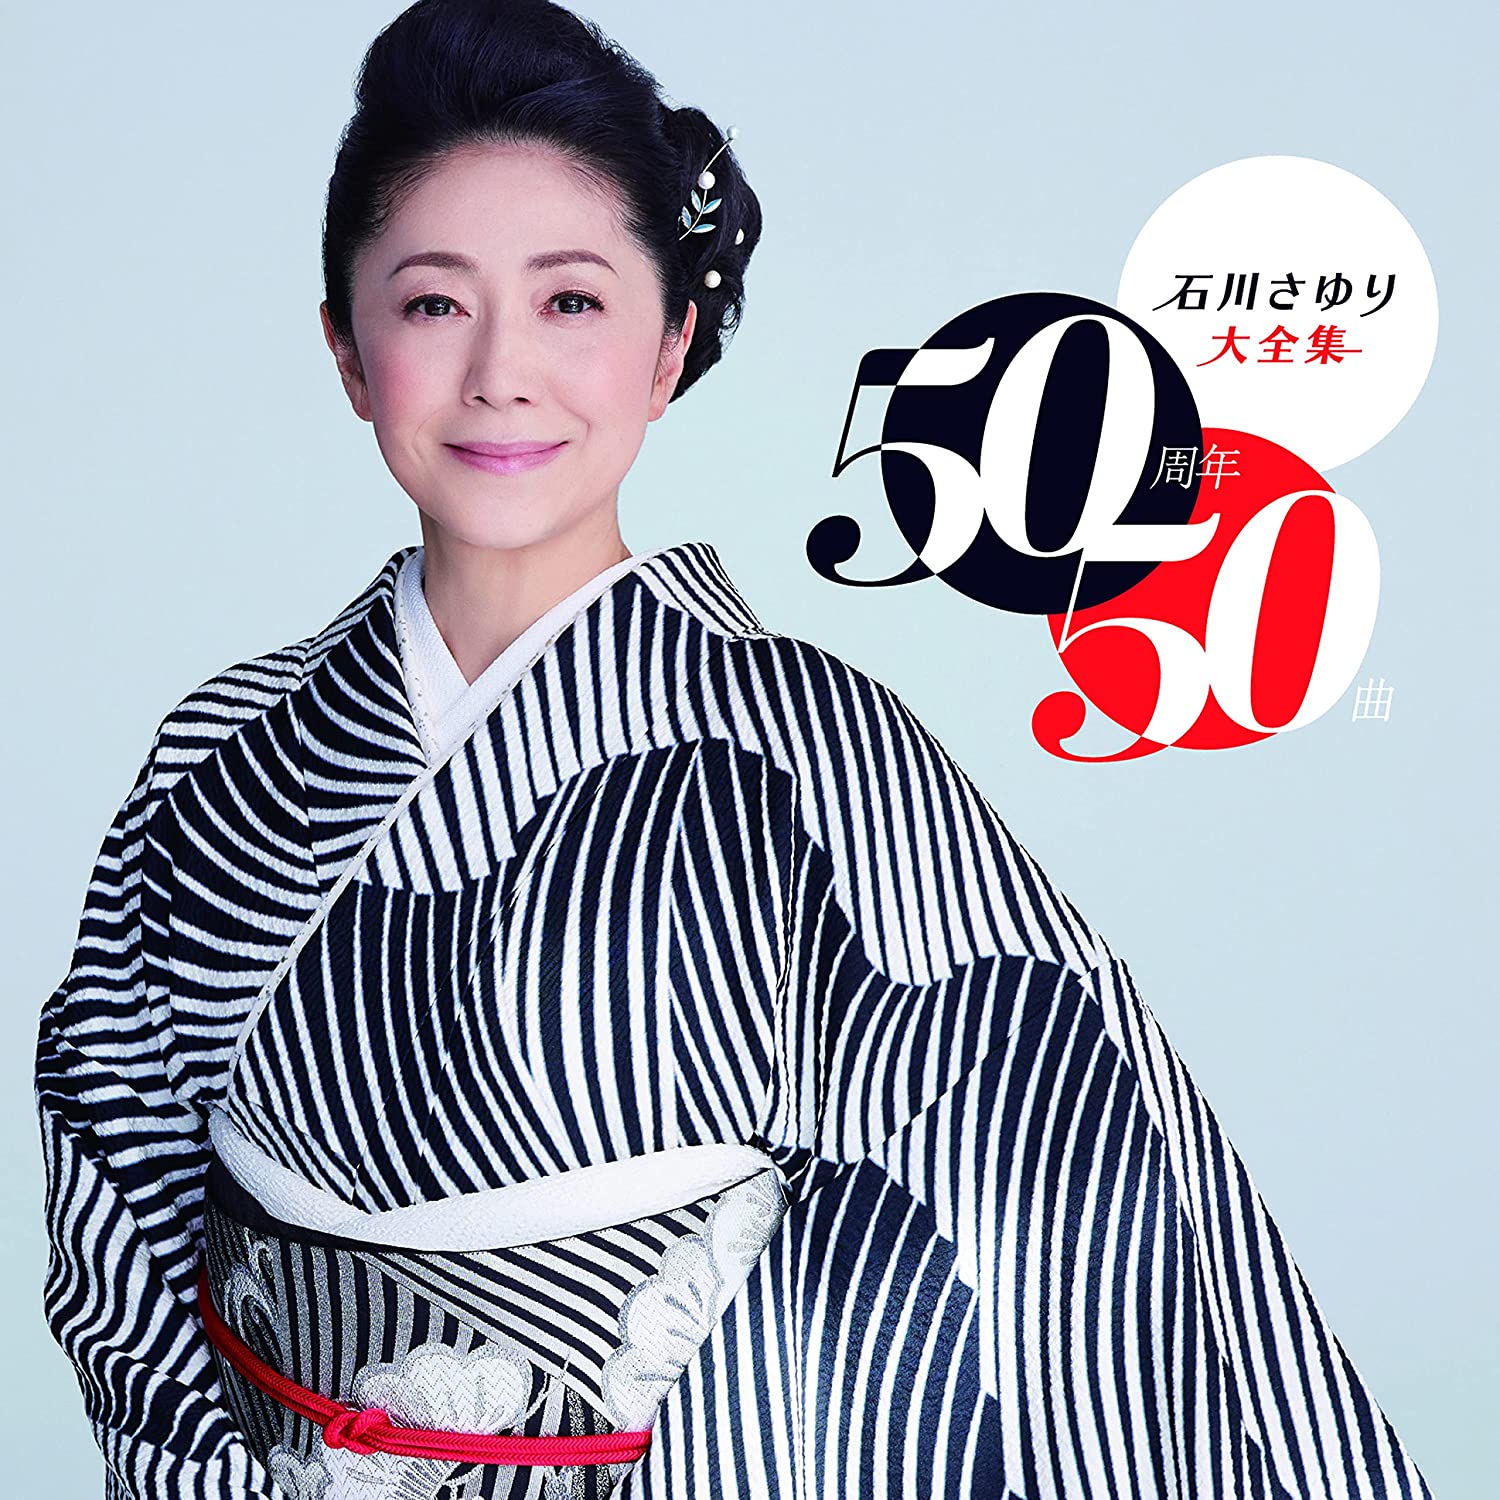 石川さゆり大全集 〜50周年50曲〜 (CD) TECE-3683 2022/10/19発売